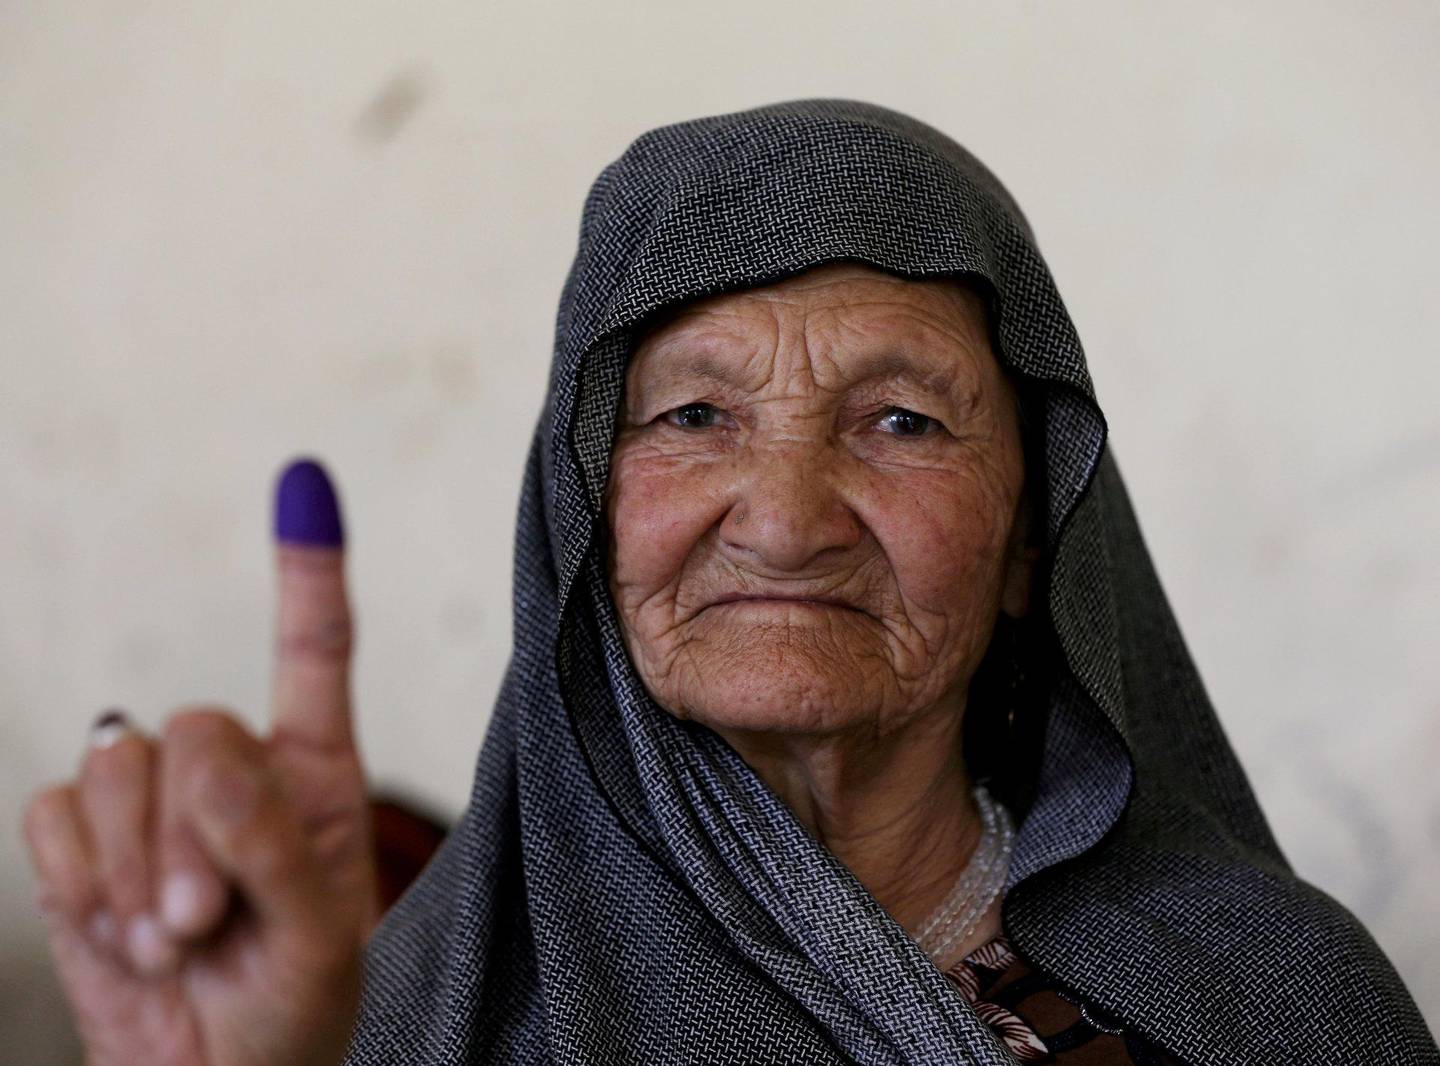 Mangel på kvinnelige valgfunksjonærer skapte trøbbel for kvinnelige velgere flere steder. FOTO: OMAR SOBHANI/NTB SCANPIX